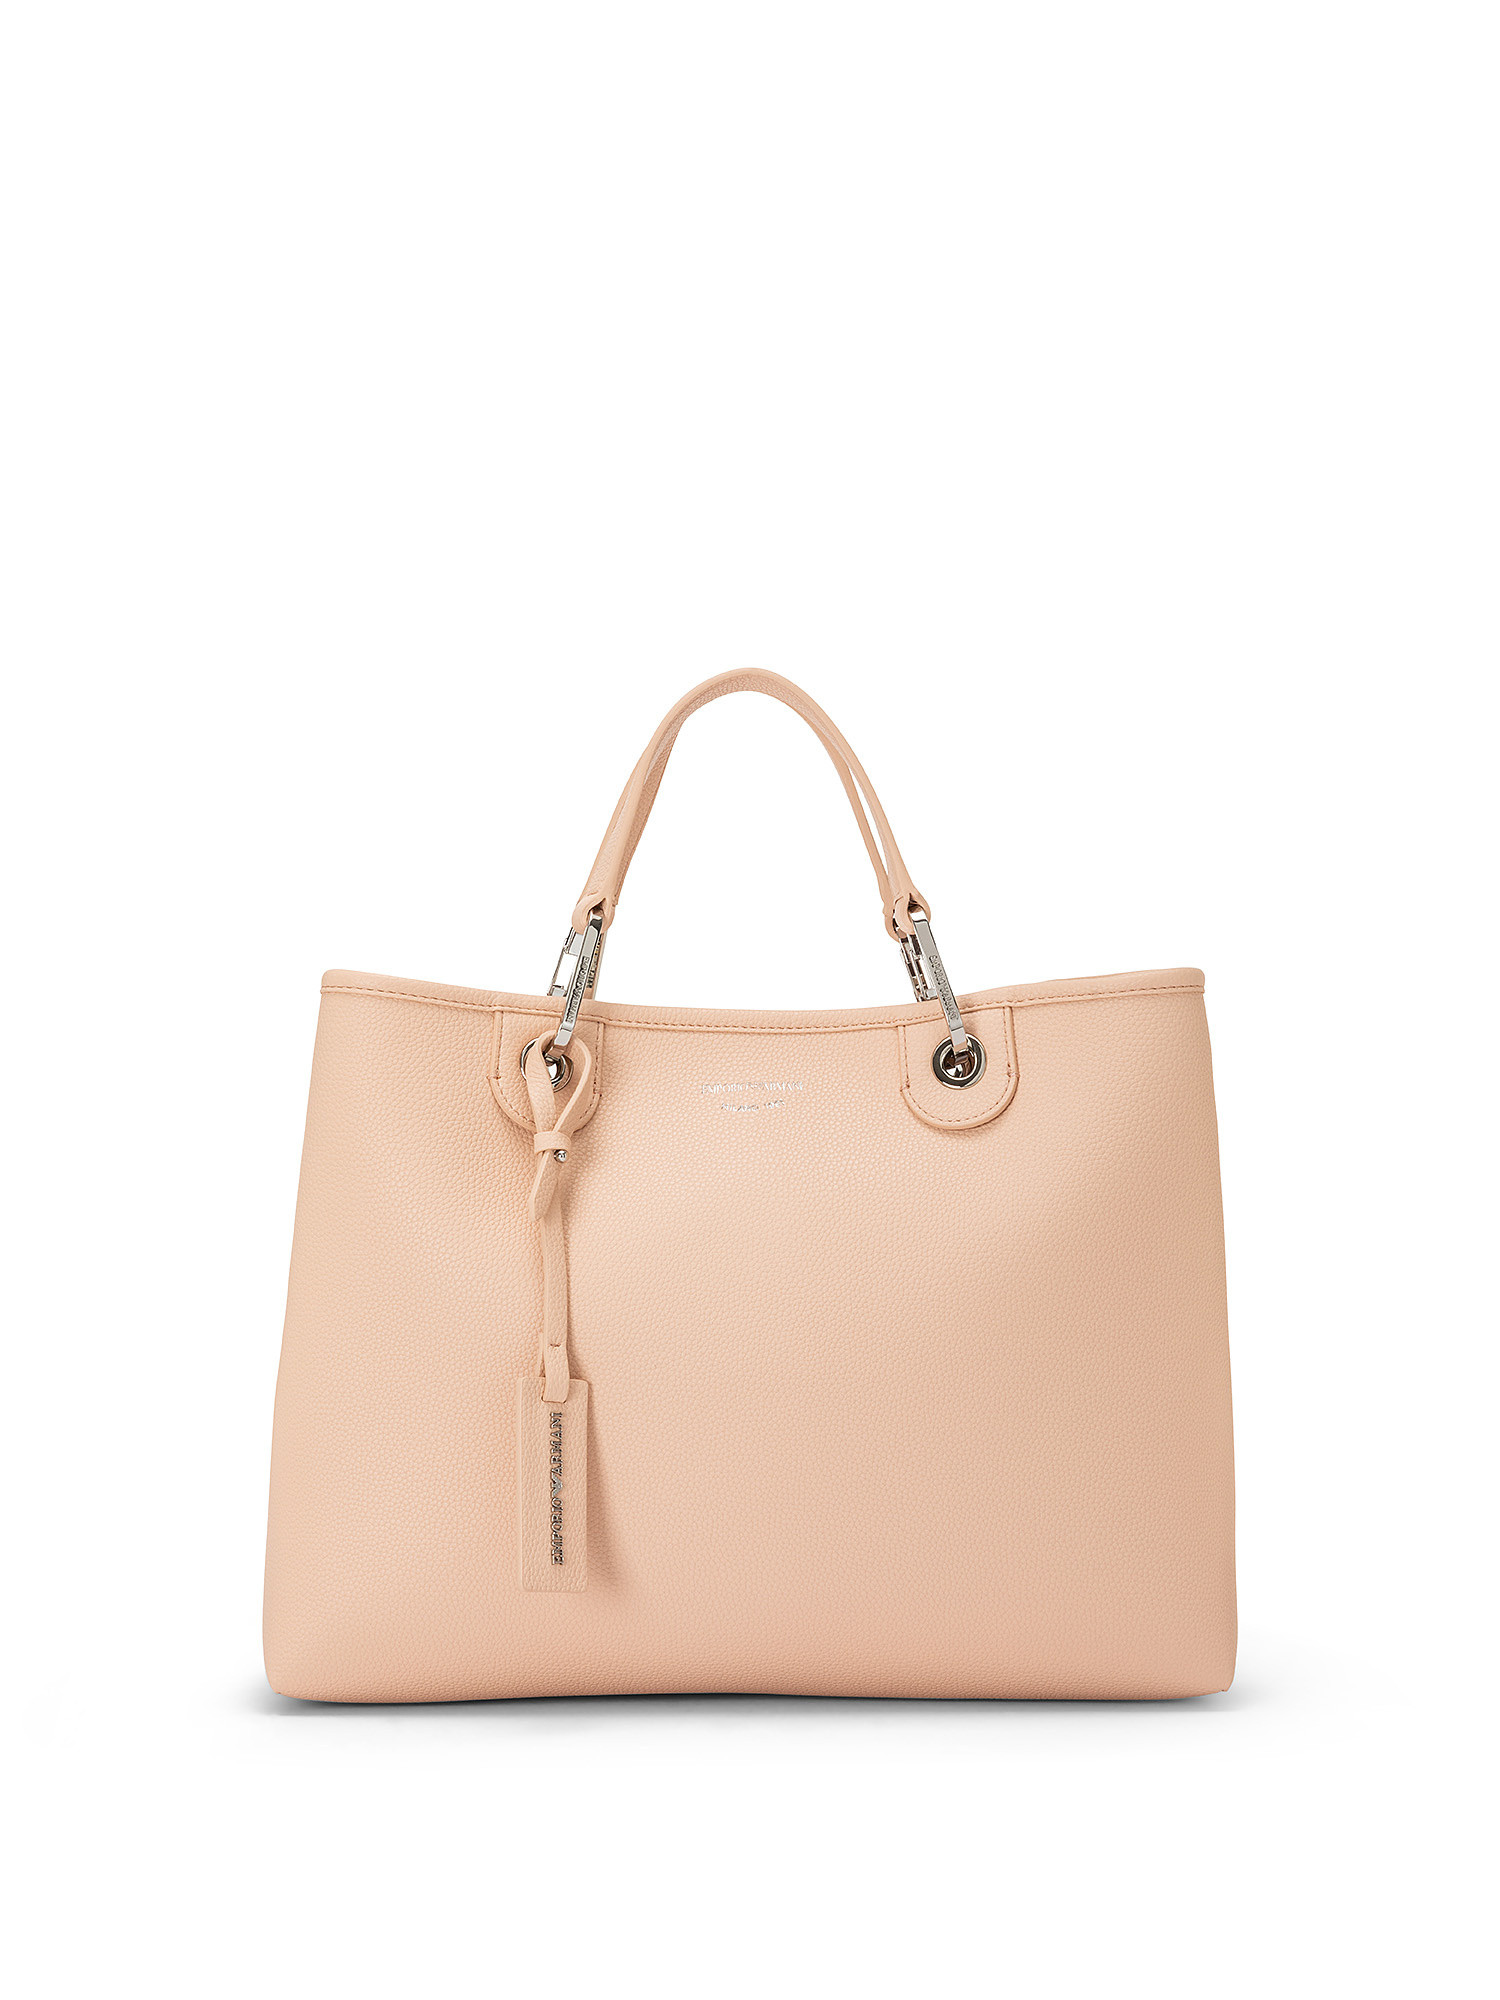 Shopping bag, Pink, large image number 0